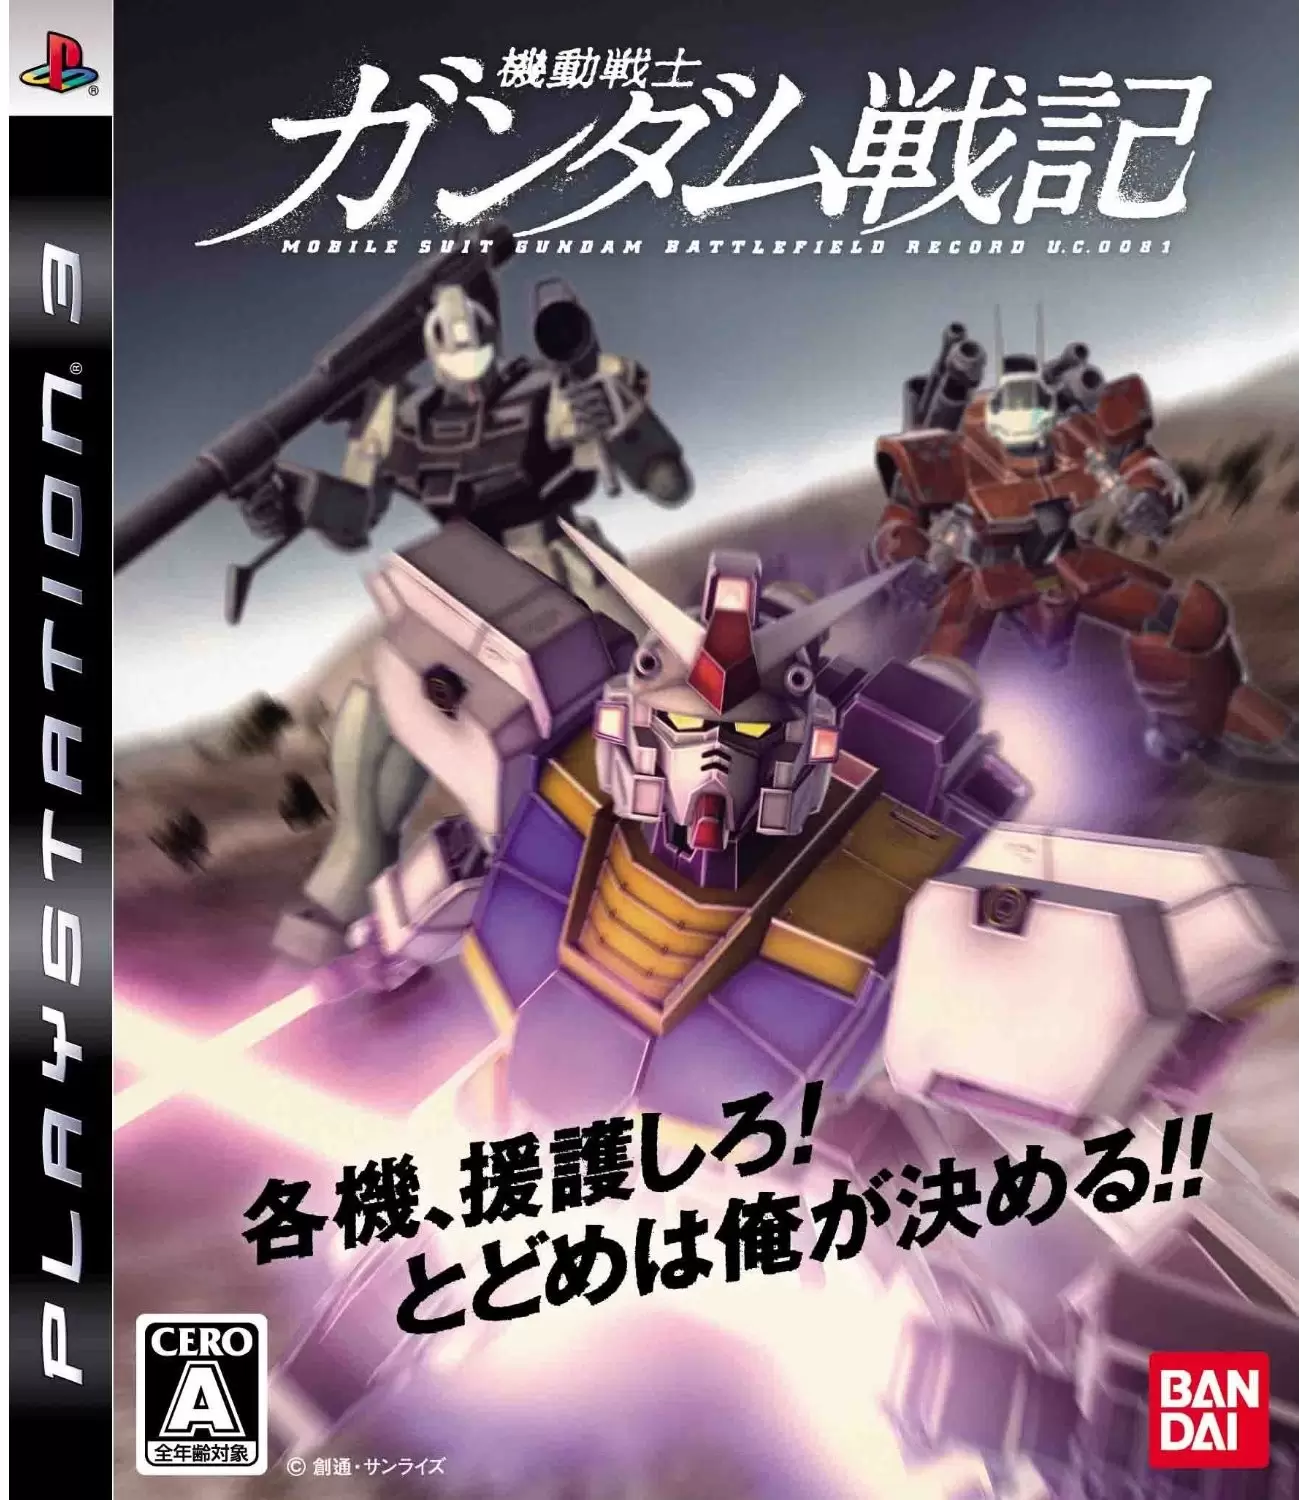 Jeux PS3 - Mobile Suit Gundam Battlefield Record U.C. 0081